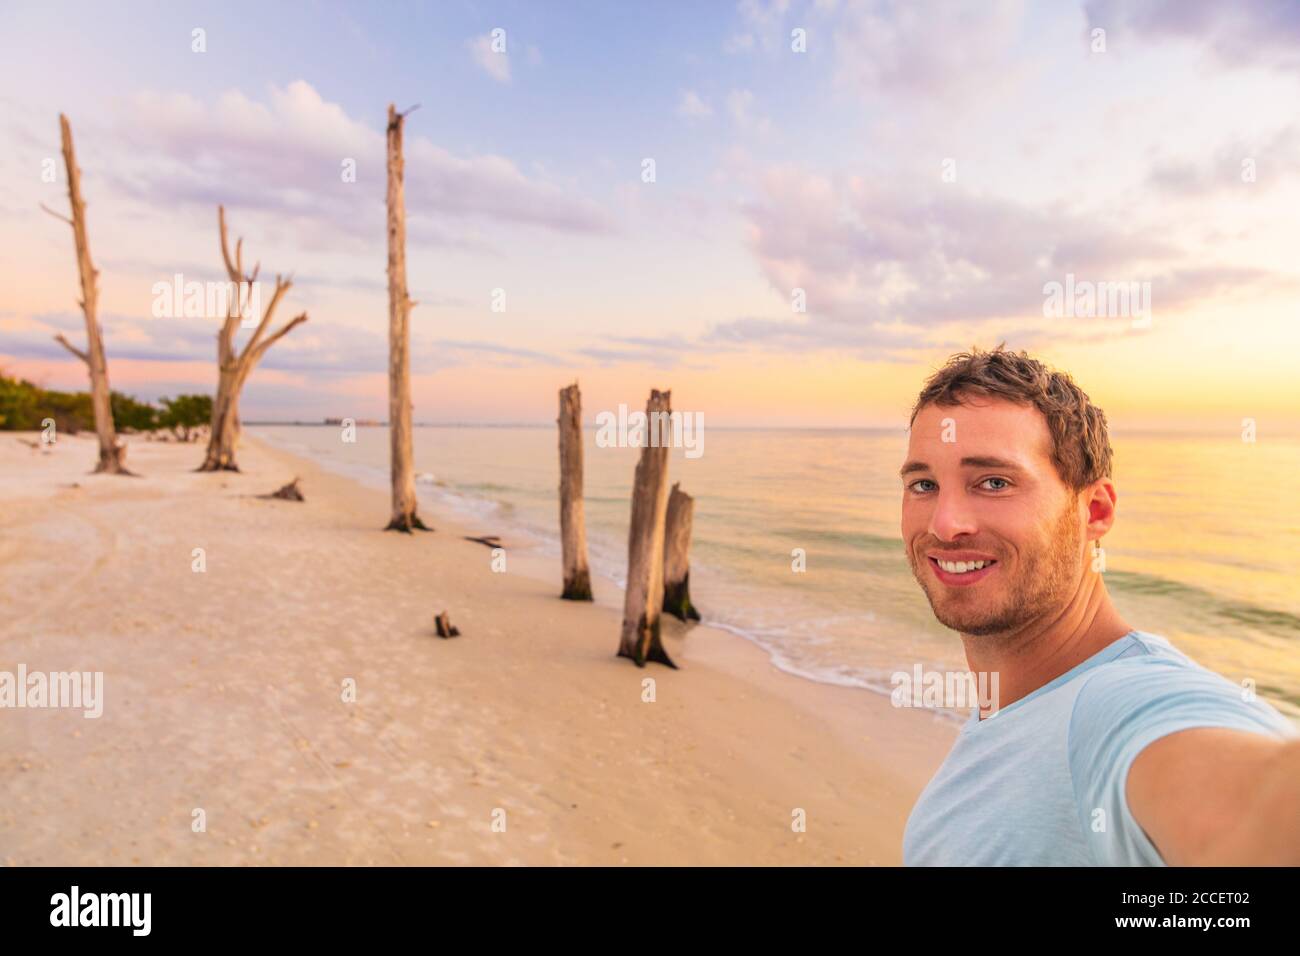 Selfie Mann Tourist auf Reise Urlaub in Florida Strandurlaub. Lovers Key State Park bei Sonnenuntergang, lächelnd junge Erwachsene allein auf Sommerreise Stockfoto